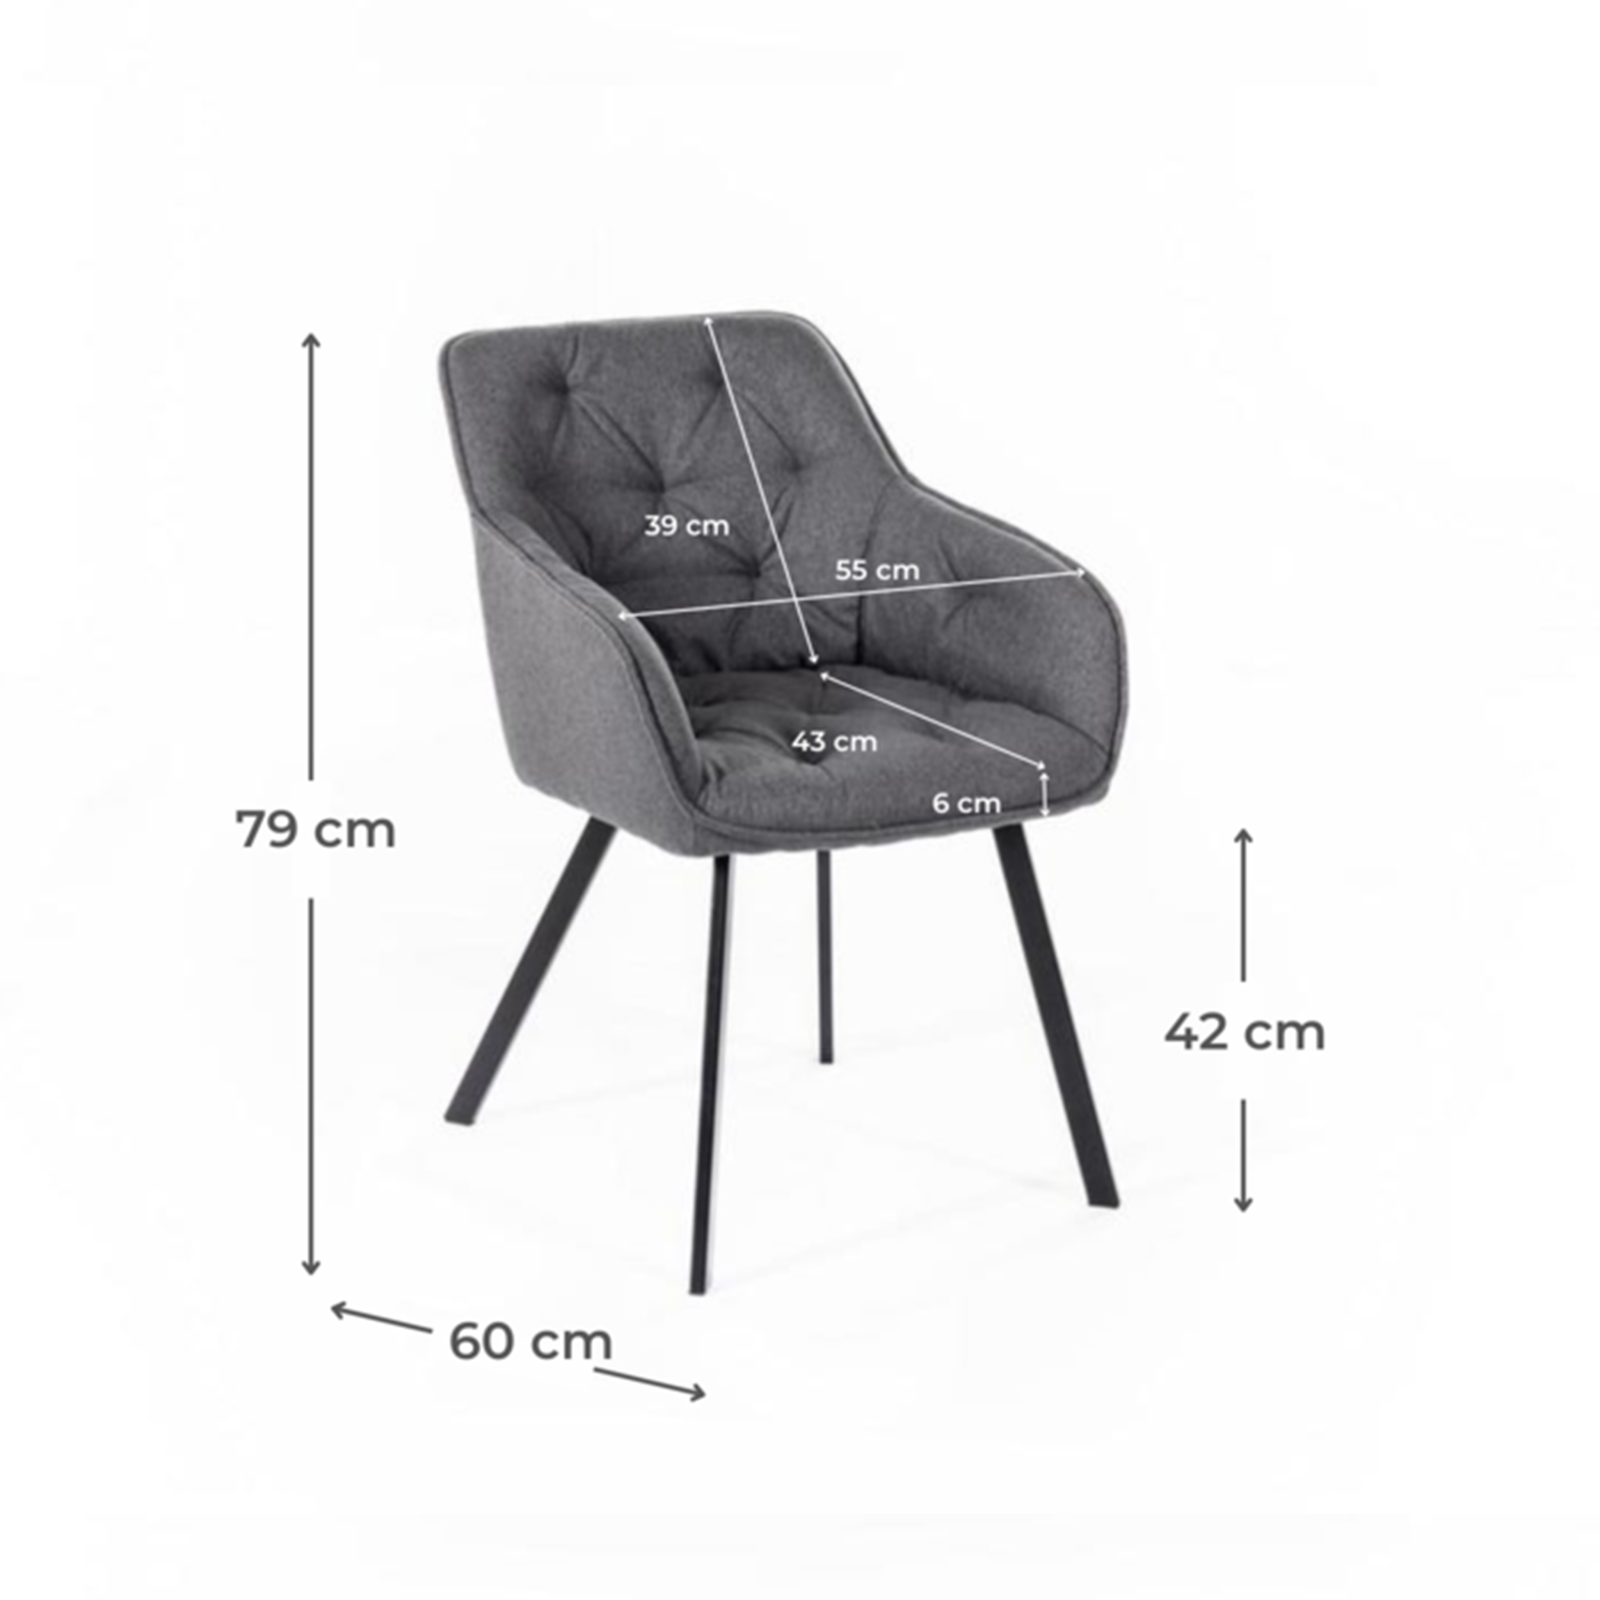 Set di sedie imbottite "Dalia" da soggiorno in tessuto gambe in metallo verniciato cm 55x60 79h